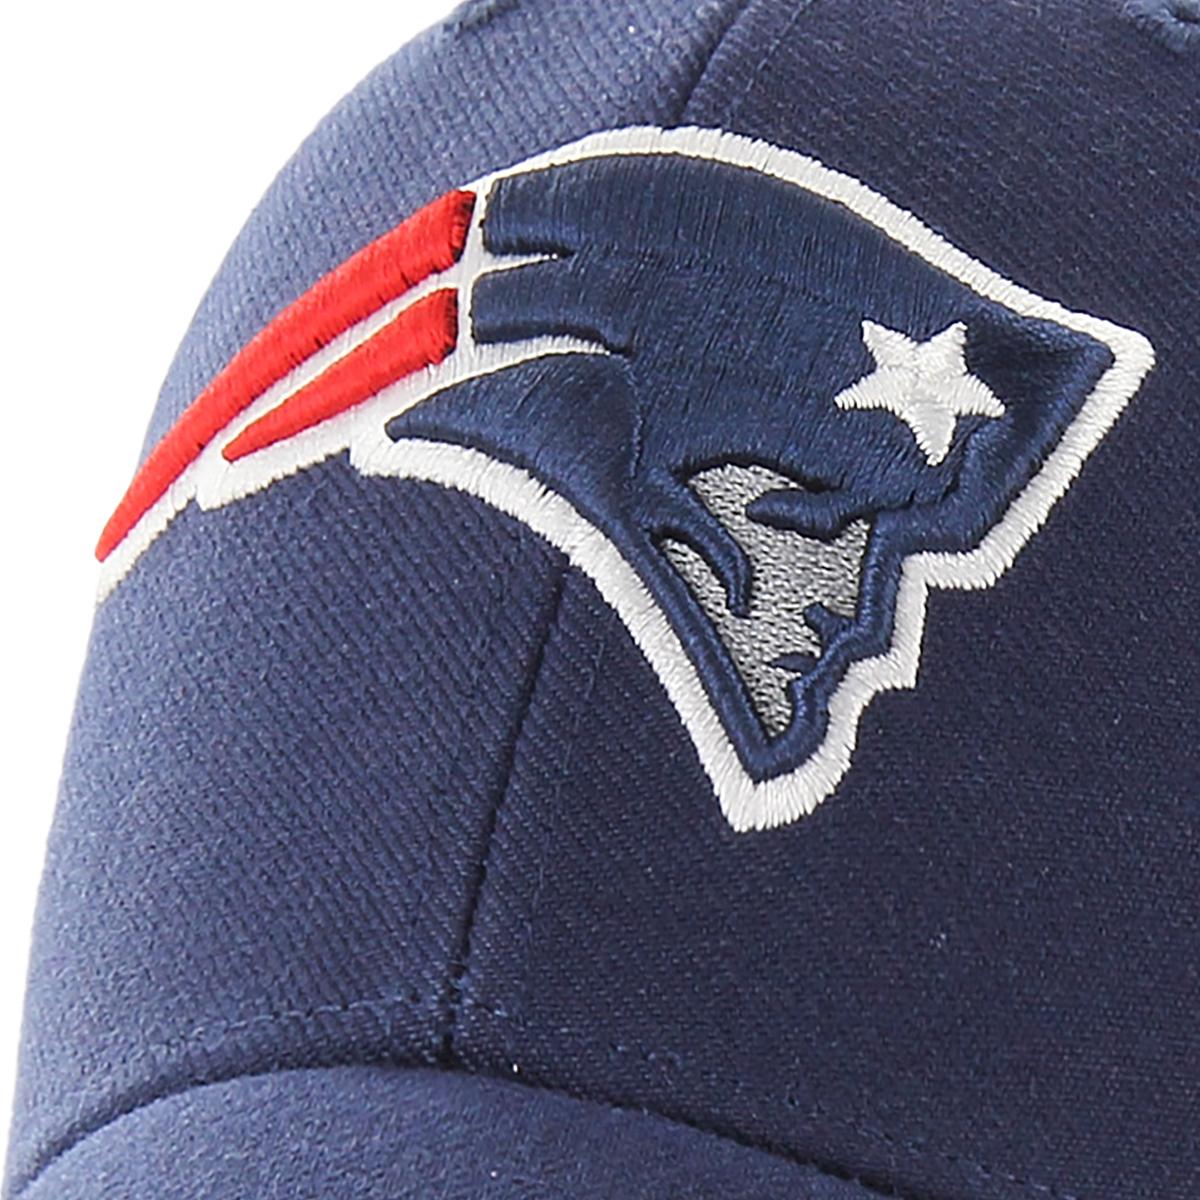 Gorra 47 Brand New England Patriots Original Ajustable NFL